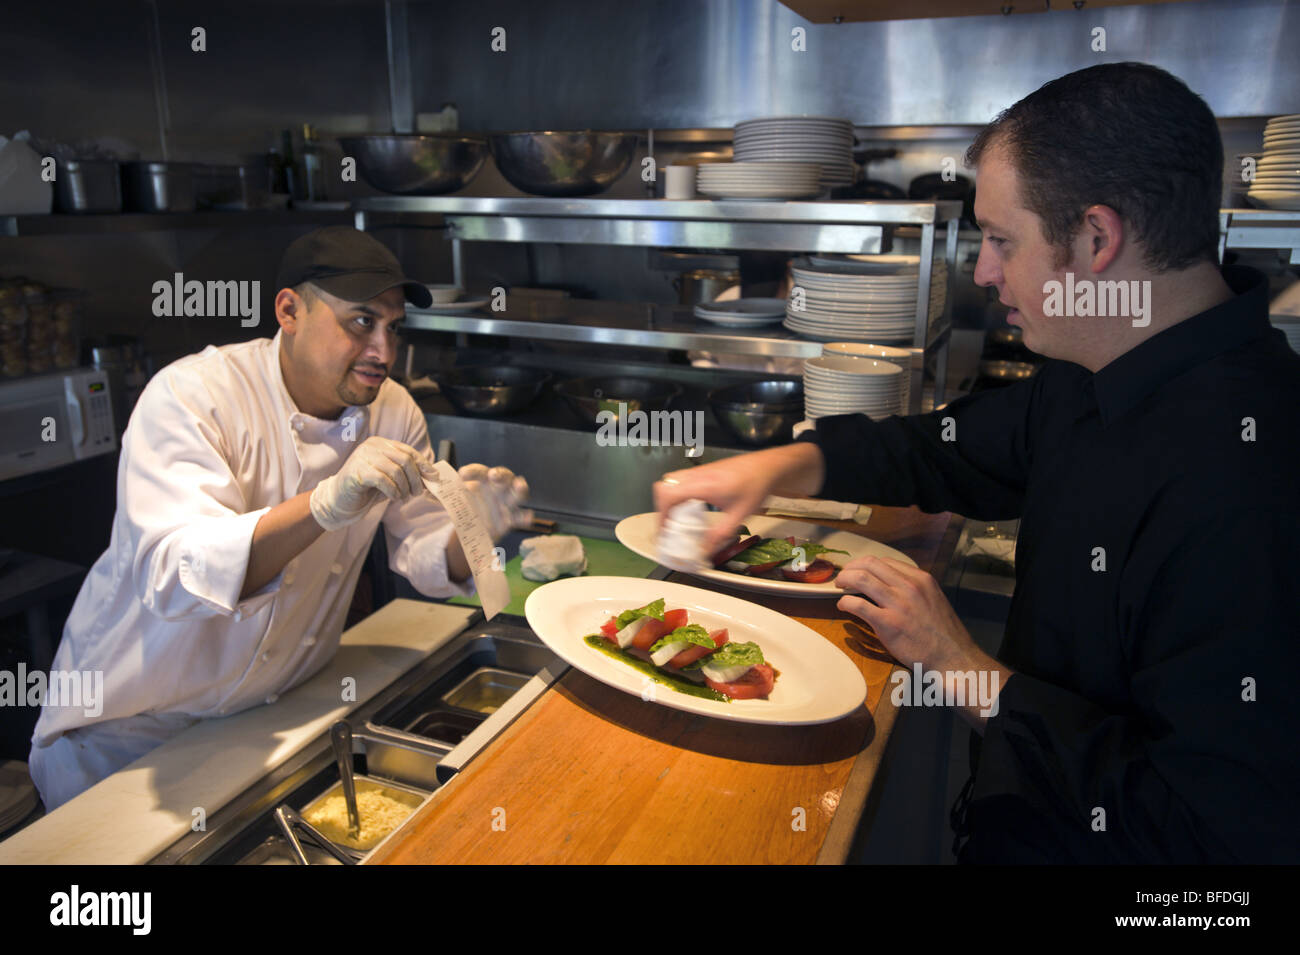 Ein spanischer Arbeitnehmer arbeitet als Koch in einem gehobenen italienischen Restaurant Cucina Colore im Bereich Cherry Creek nördlich von Denver, Col Stockfoto